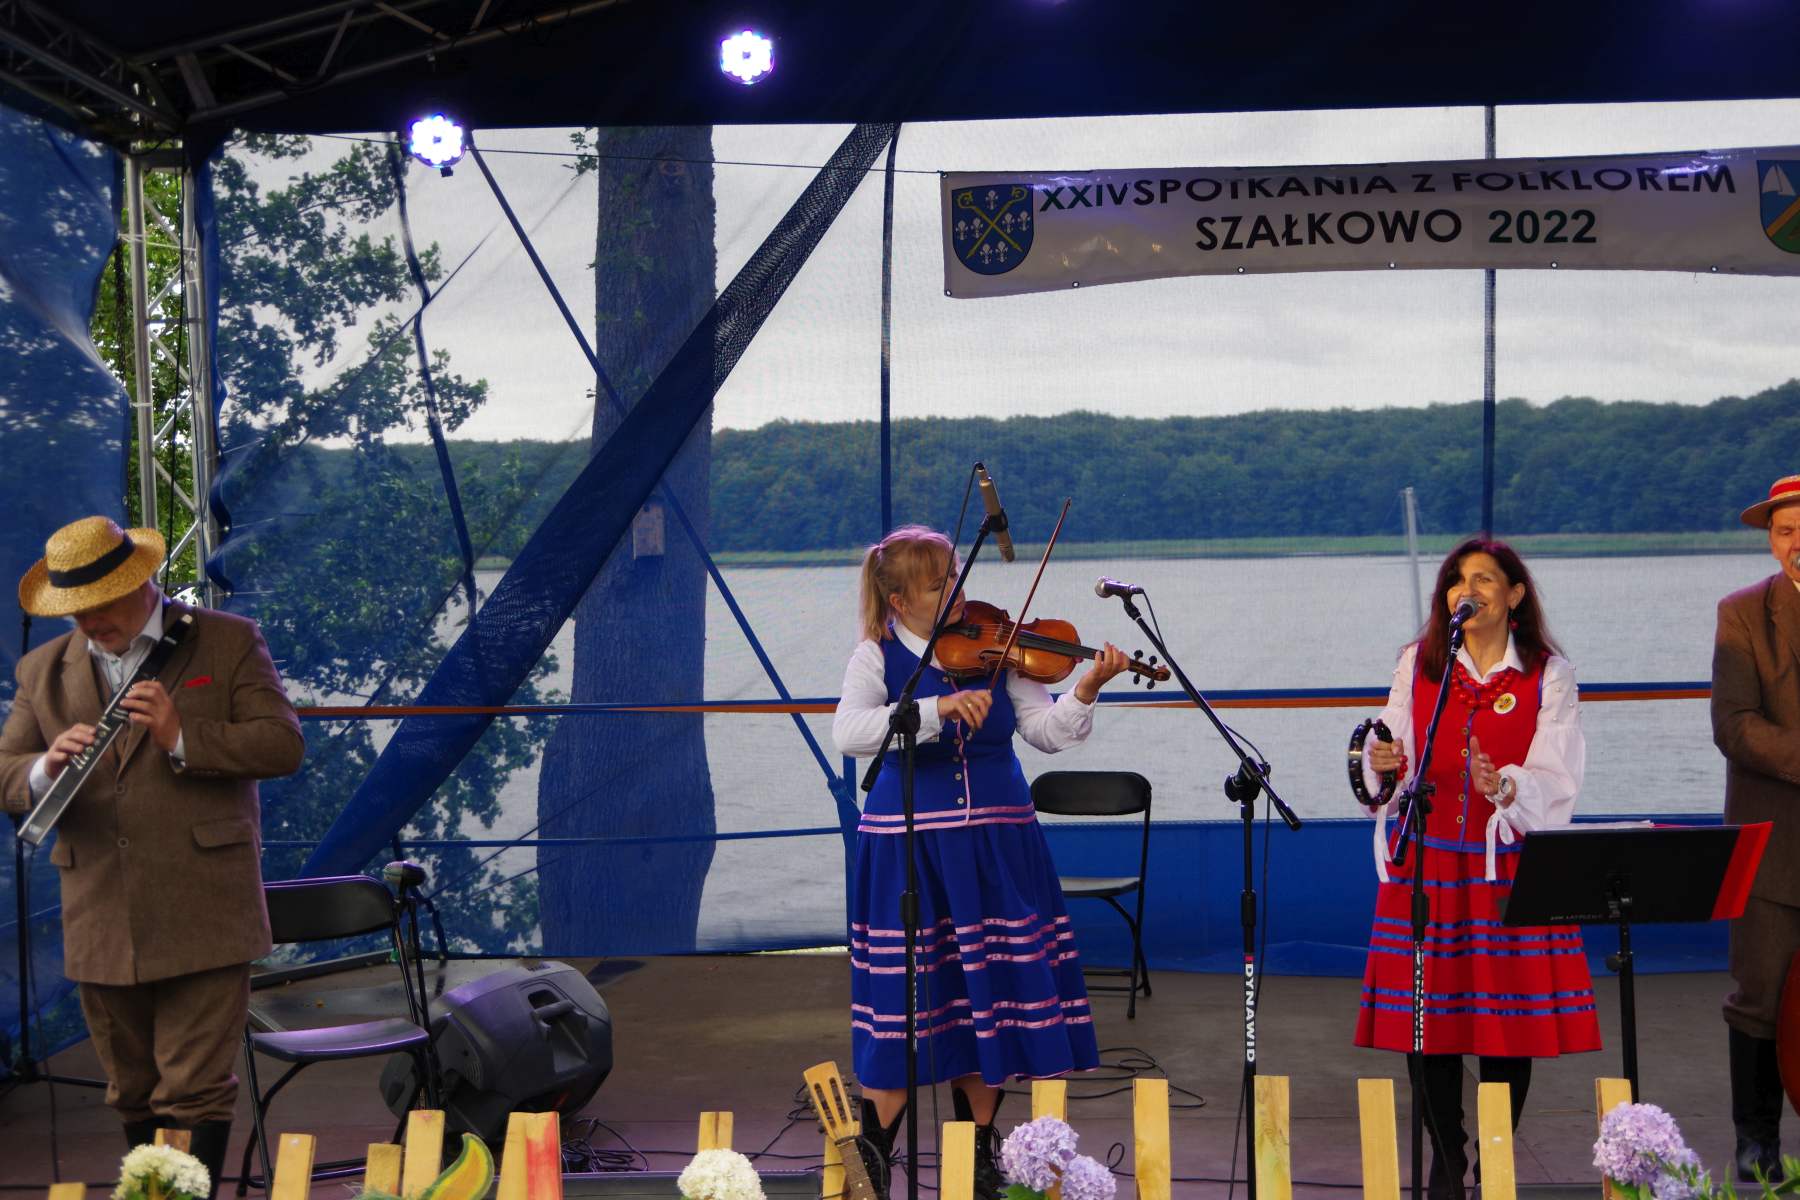 XXIV Spotkania z Folklorem w Szałkowie